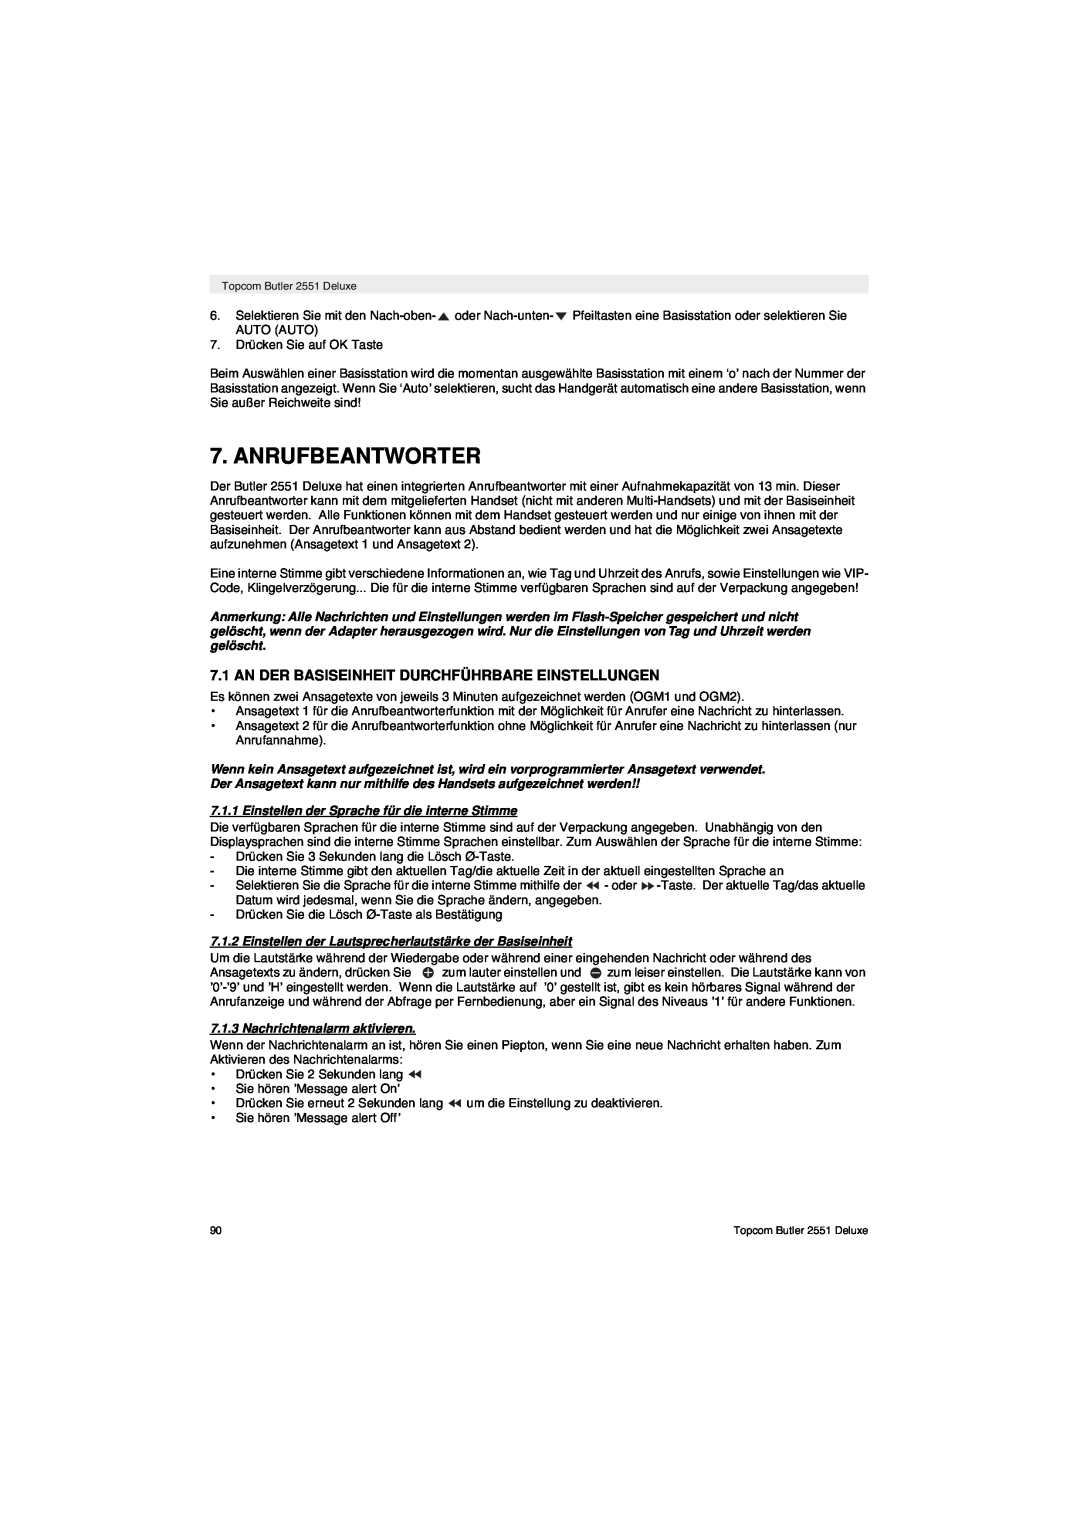 Topcom 2551 manual Anrufbeantworter, An Der Basiseinheit Durchführbare Einstellungen, Nachrichtenalarm aktivieren 